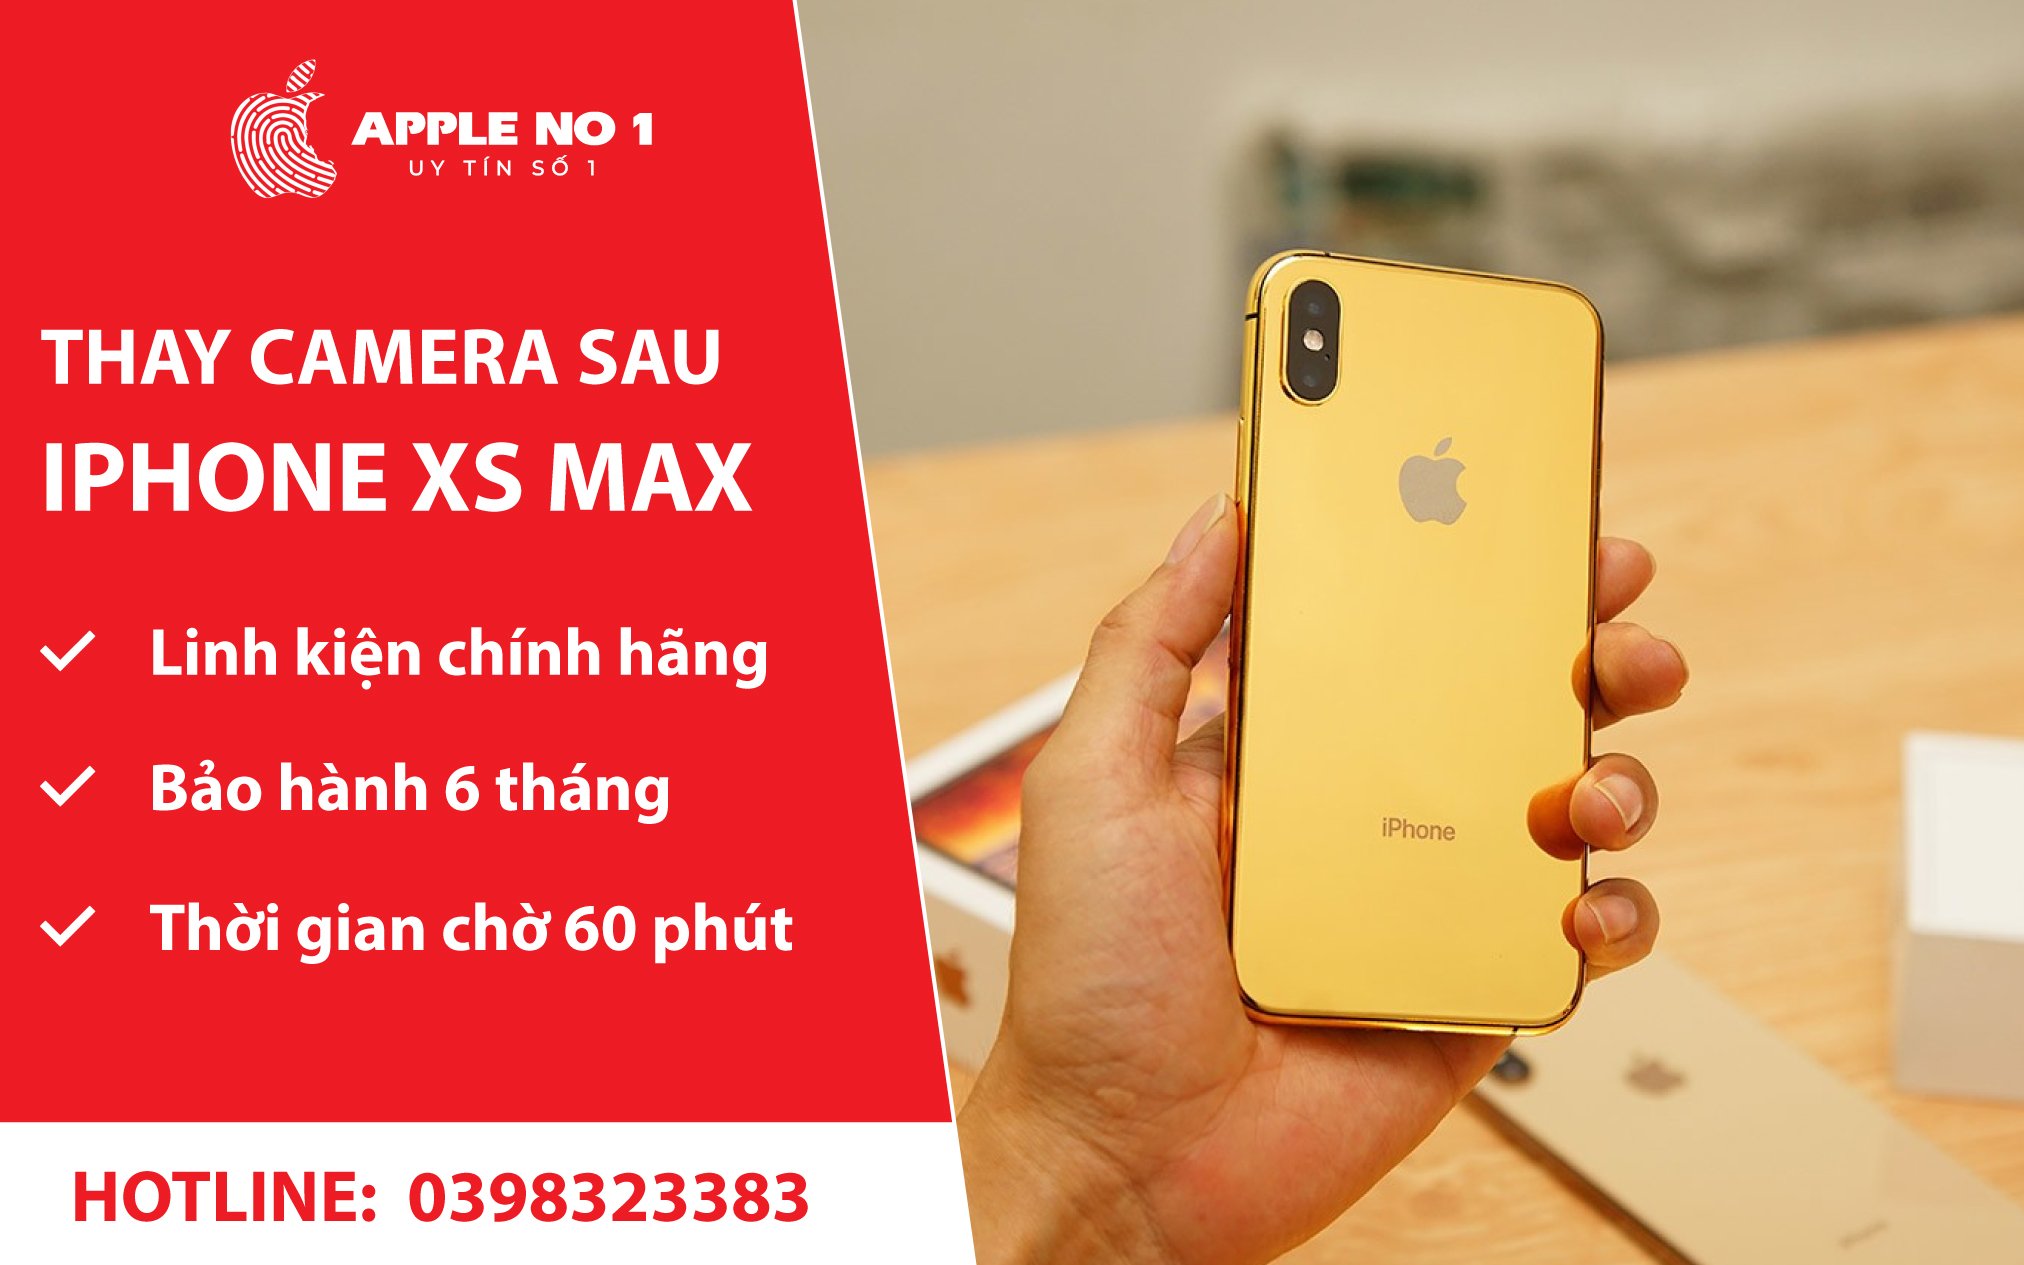 thay camera sau iphone xs max chinh hang lay ngay tai apple no.1